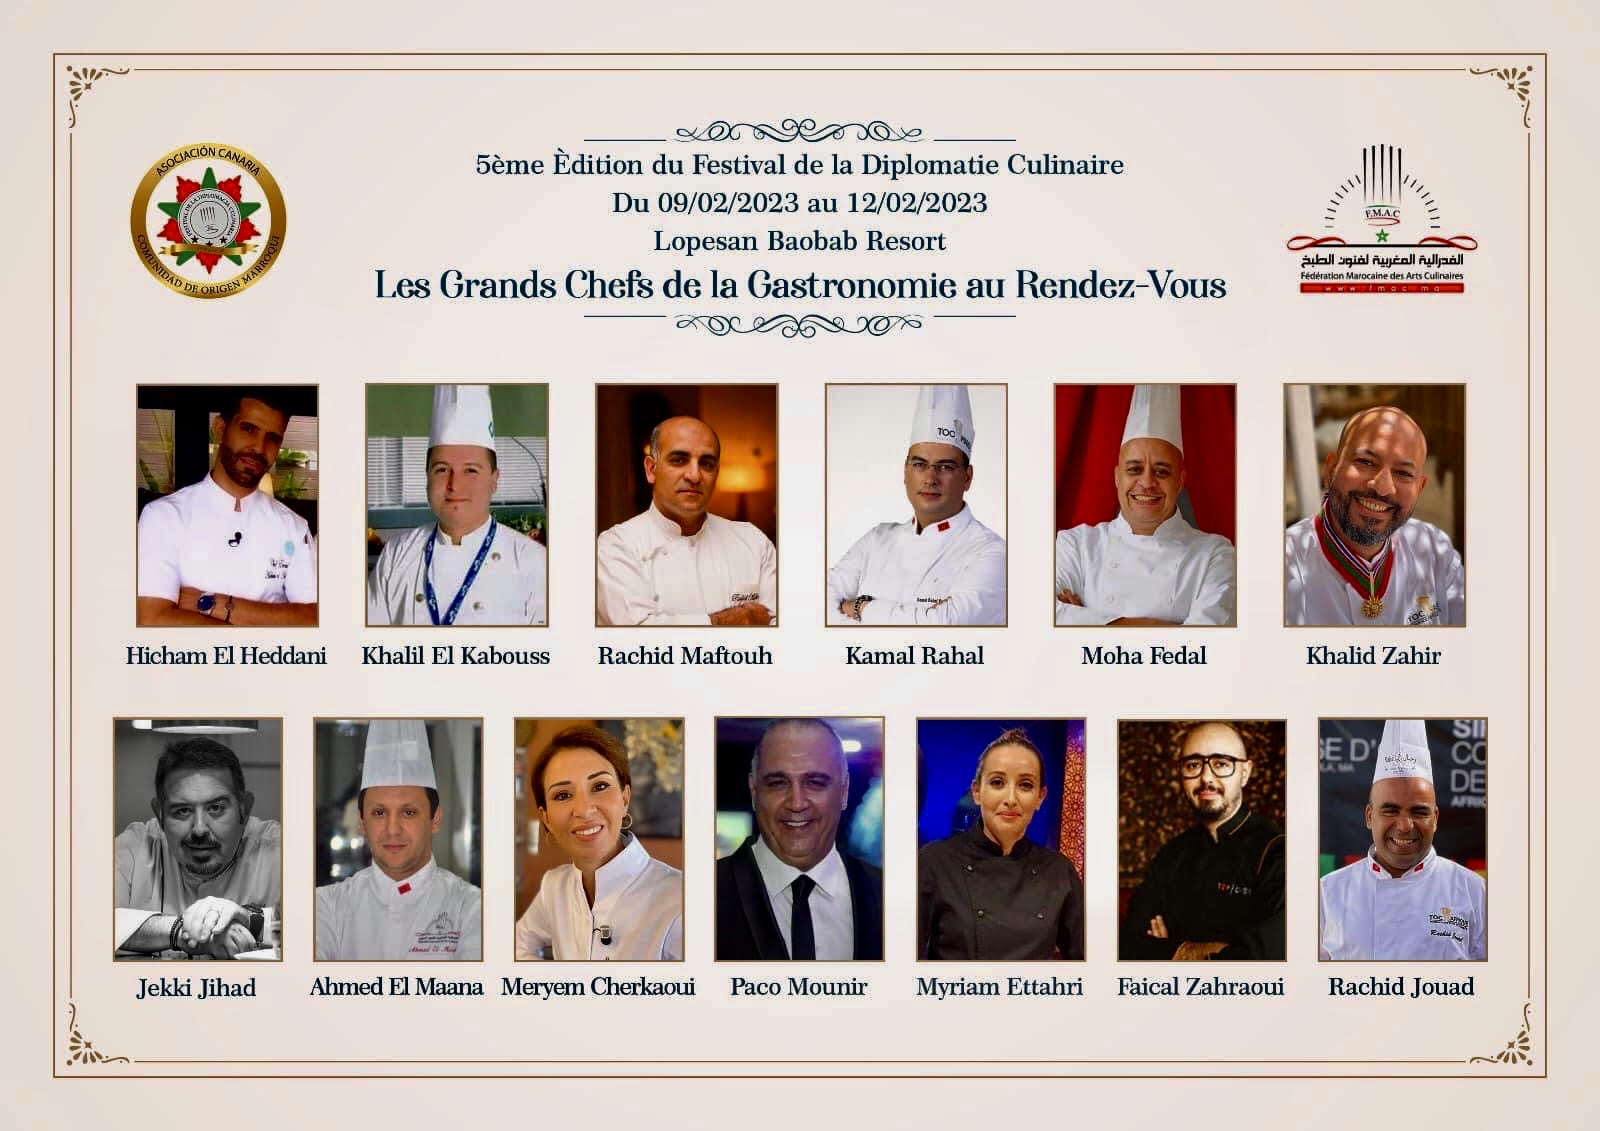 Le Maroc organise la 5ème édition du Festival de la Diplomatie Culinaire (09-12 février 2023)